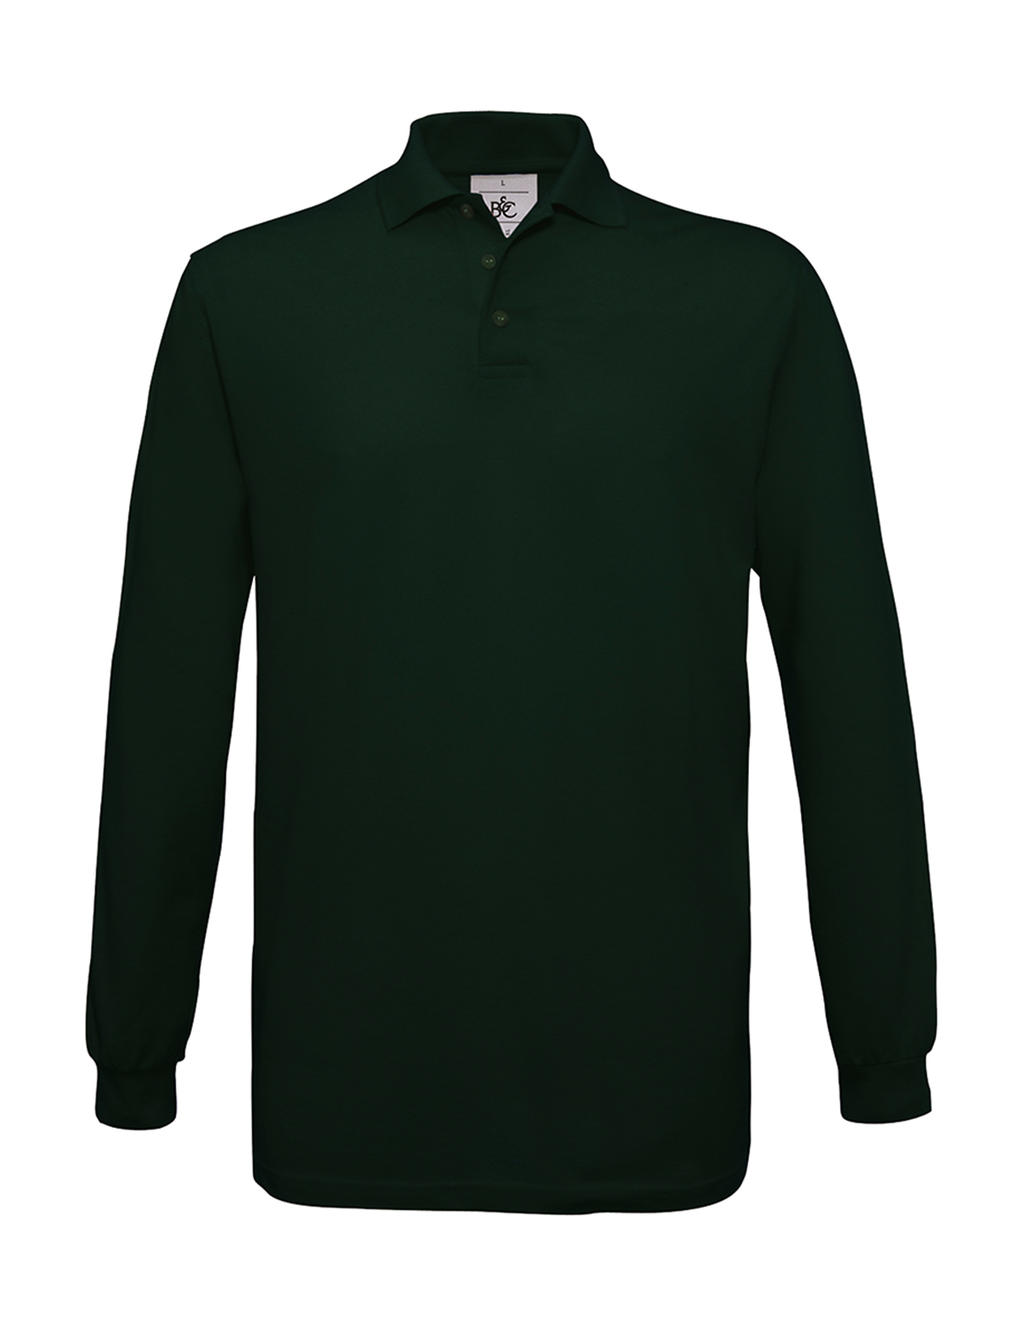 Pánské polo tričko B&C Safran s dlouhým rukávem - tmavě zelené, XL